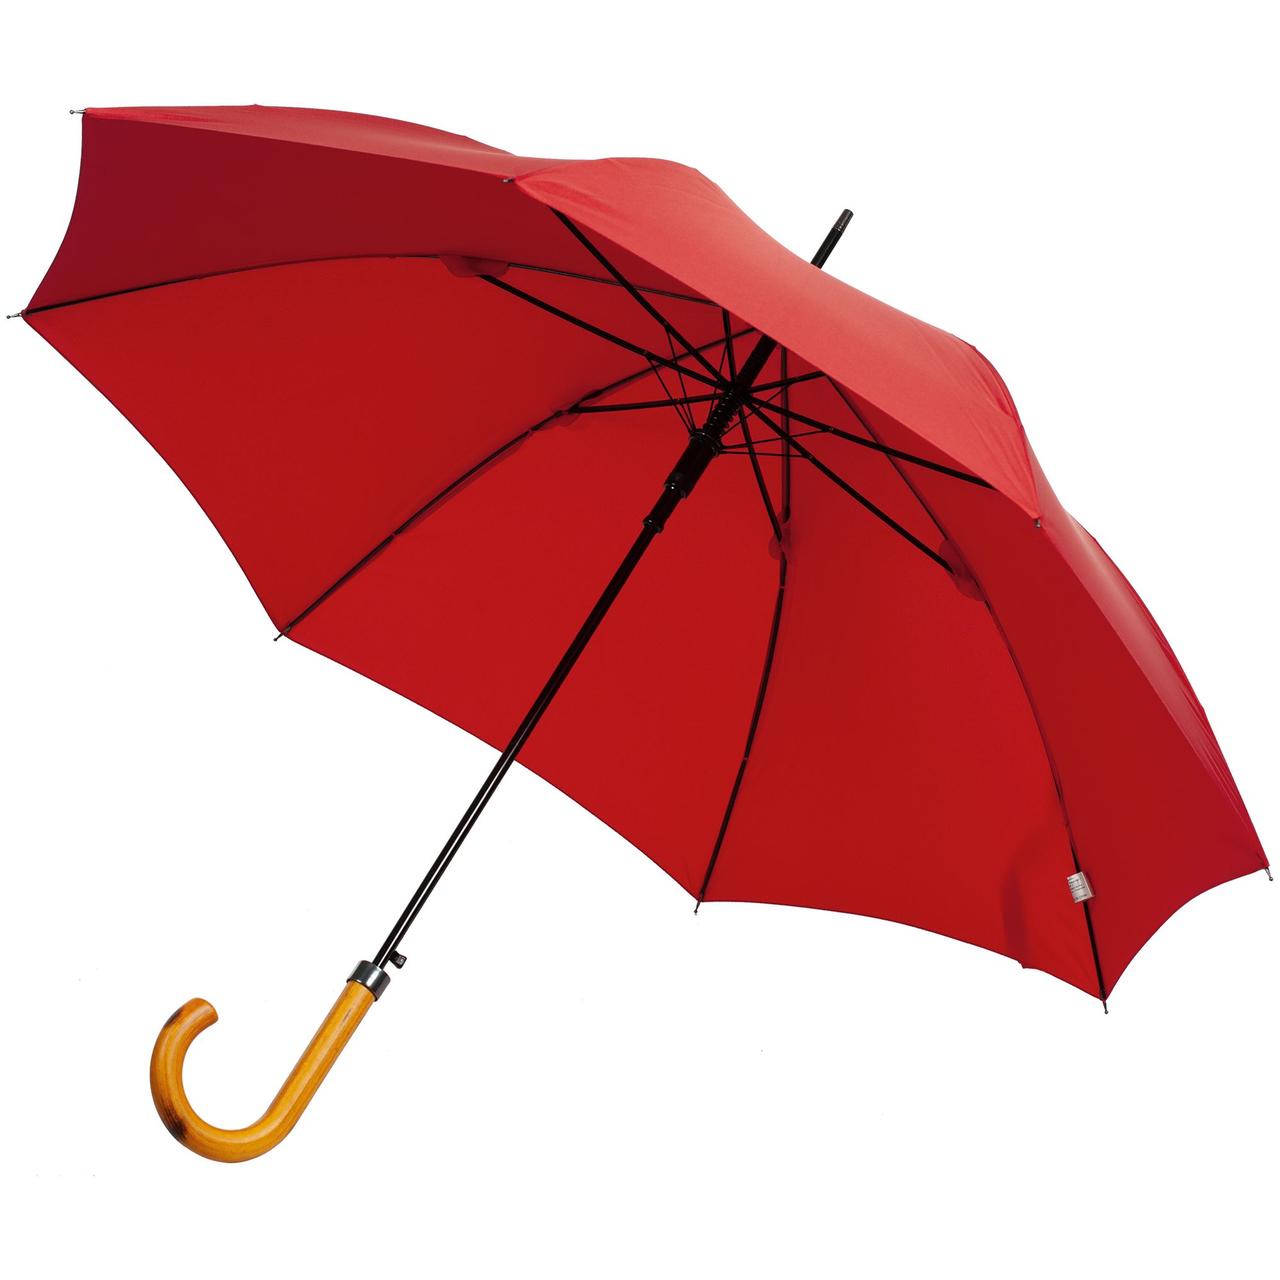 Зонт-трость LockWood, красный (артикул 11547.50)